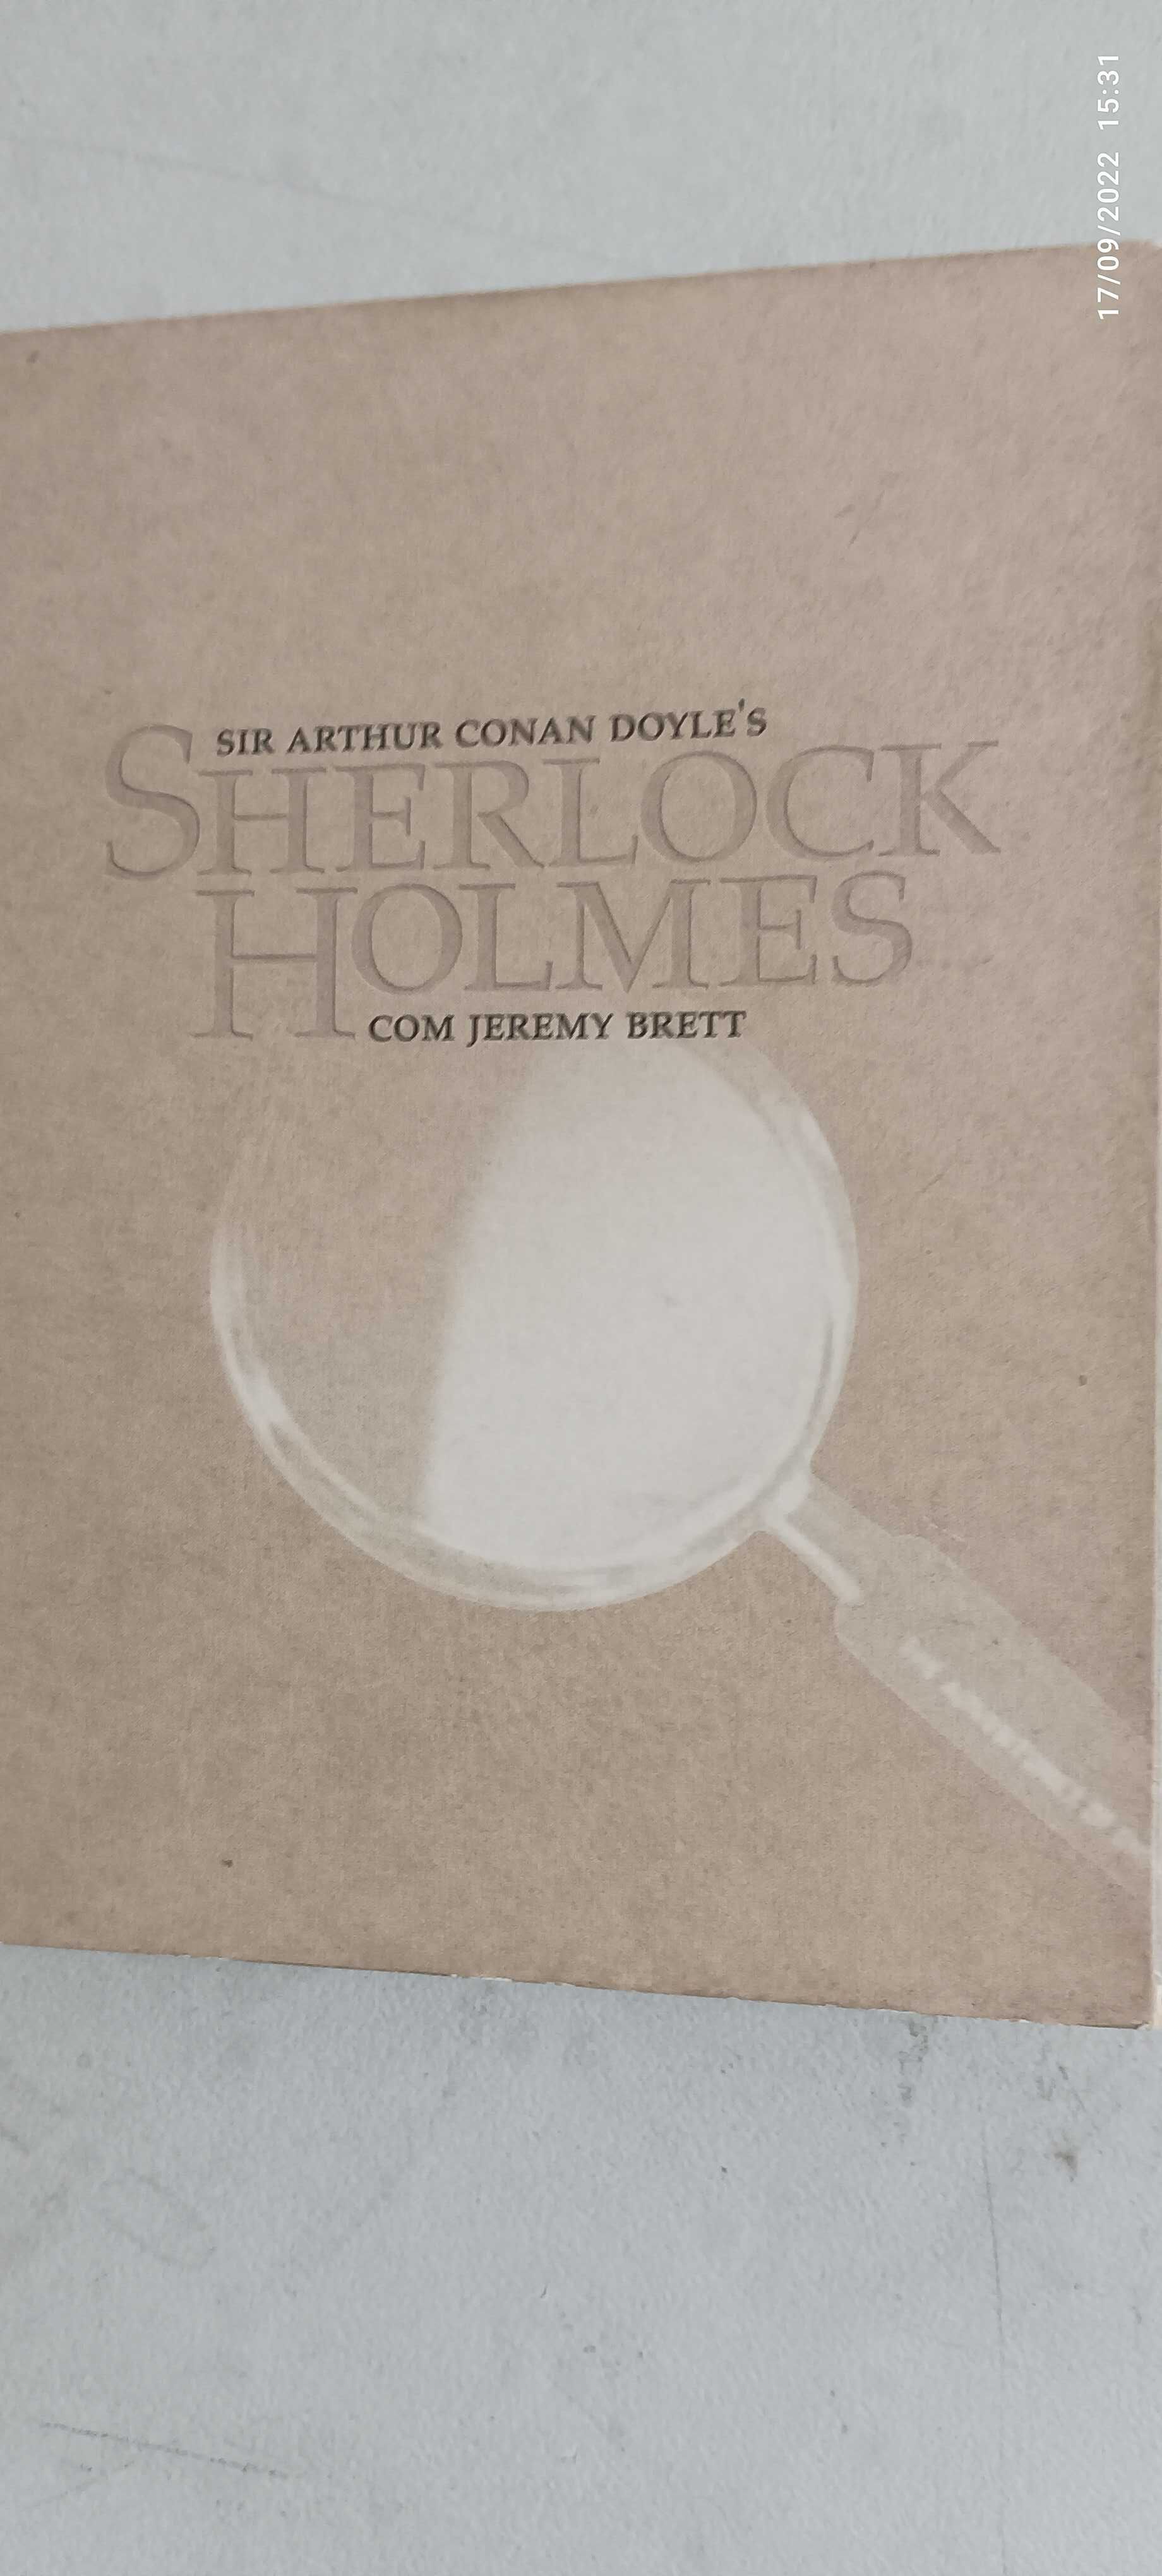 S4 - Série especial - Sherlock Holmes - completa ( ler descrição )